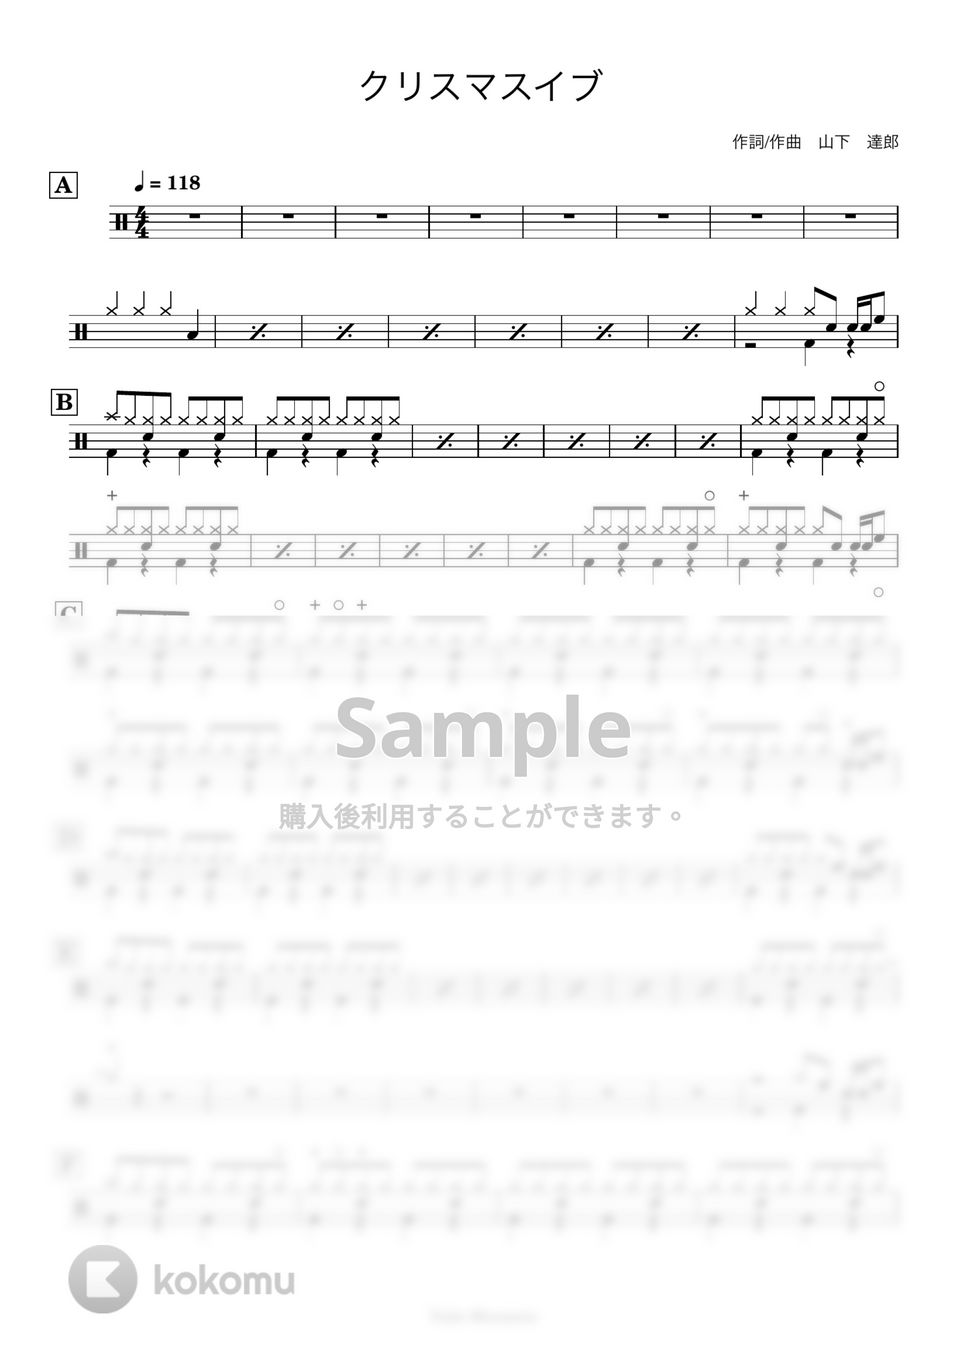 山下達郎 - 【ドラム譜】クリスマス・イブ【完コピ】 by Taiki Mizumoto